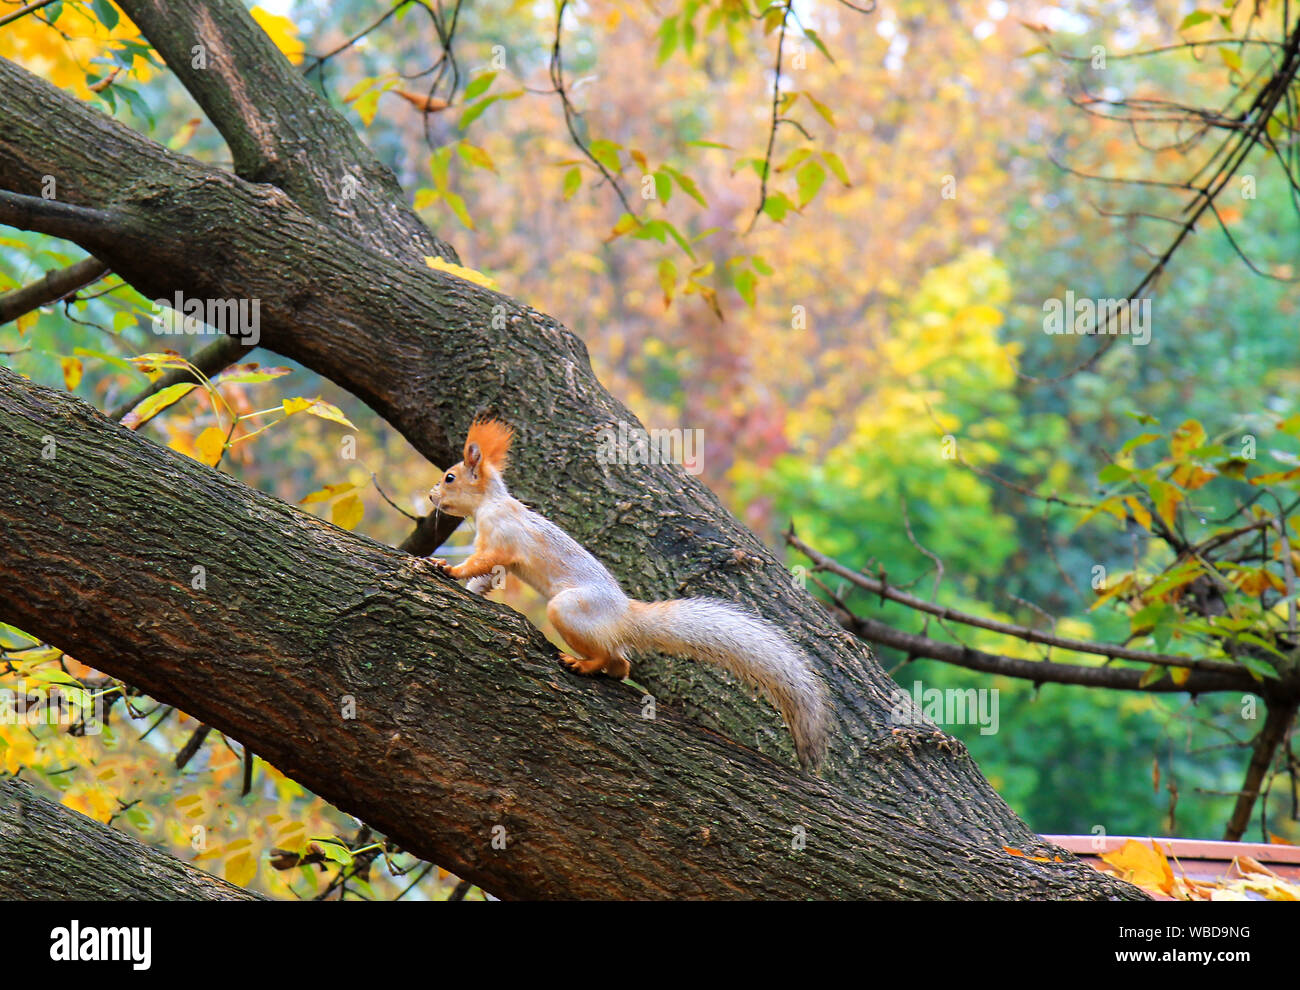 Eine kleine Eichhörnchen mit einem großen Schwanz läuft Baum in einem Herbst Sophia Park in Uman, Ukraine im Herbst, Herbst Landschaft. Kalender, Postkarte des Stockfoto